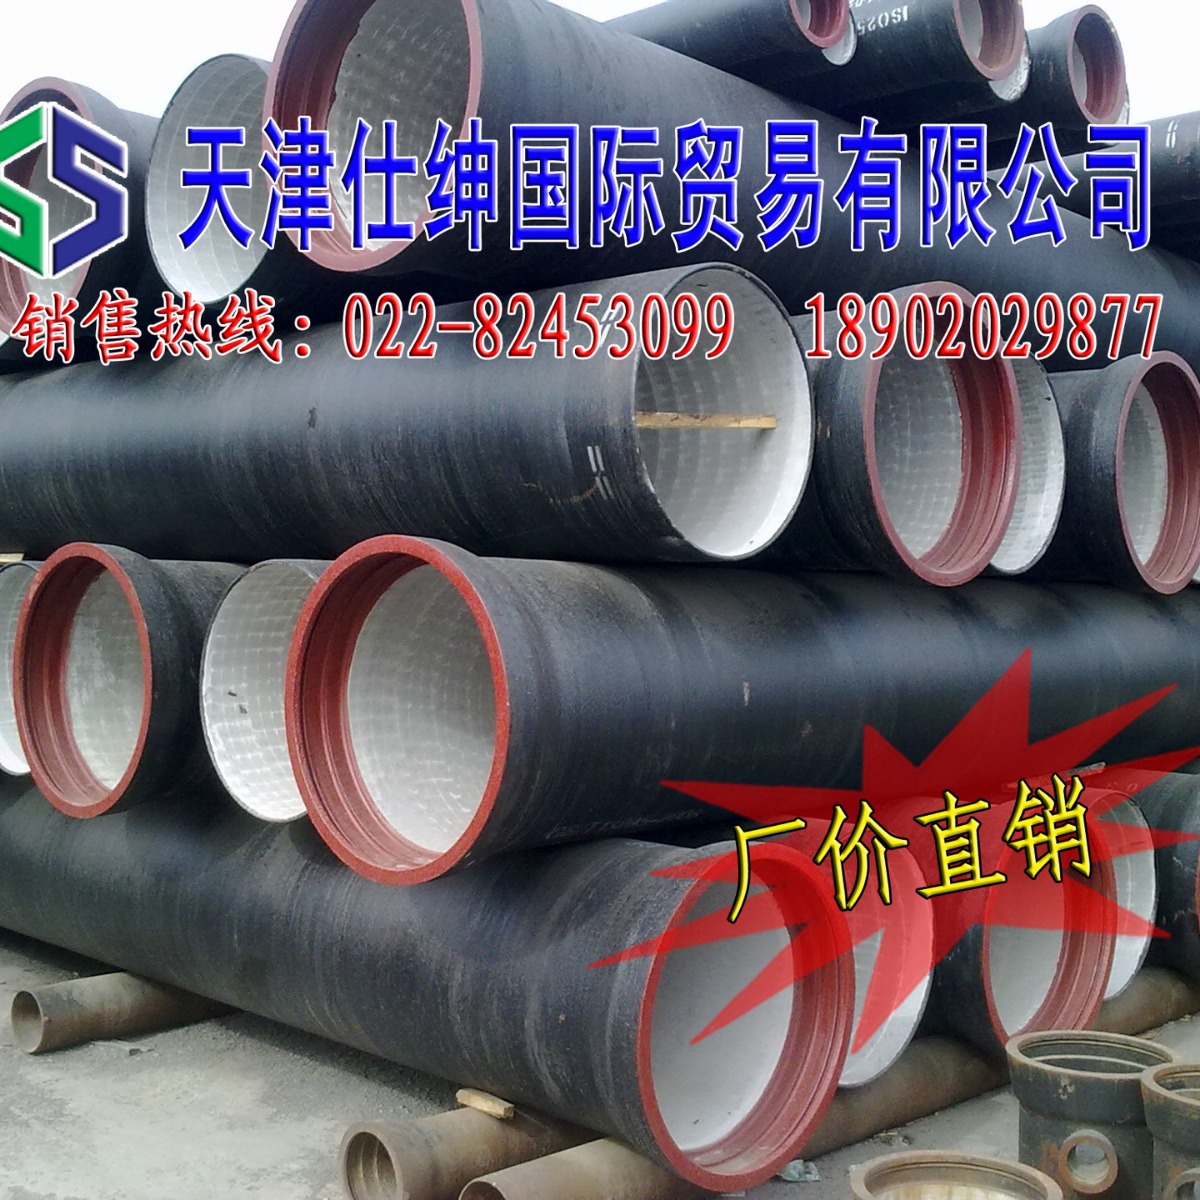 山西铸造厂厂家直销600加重球墨铸铁井盖天津地区供货可定